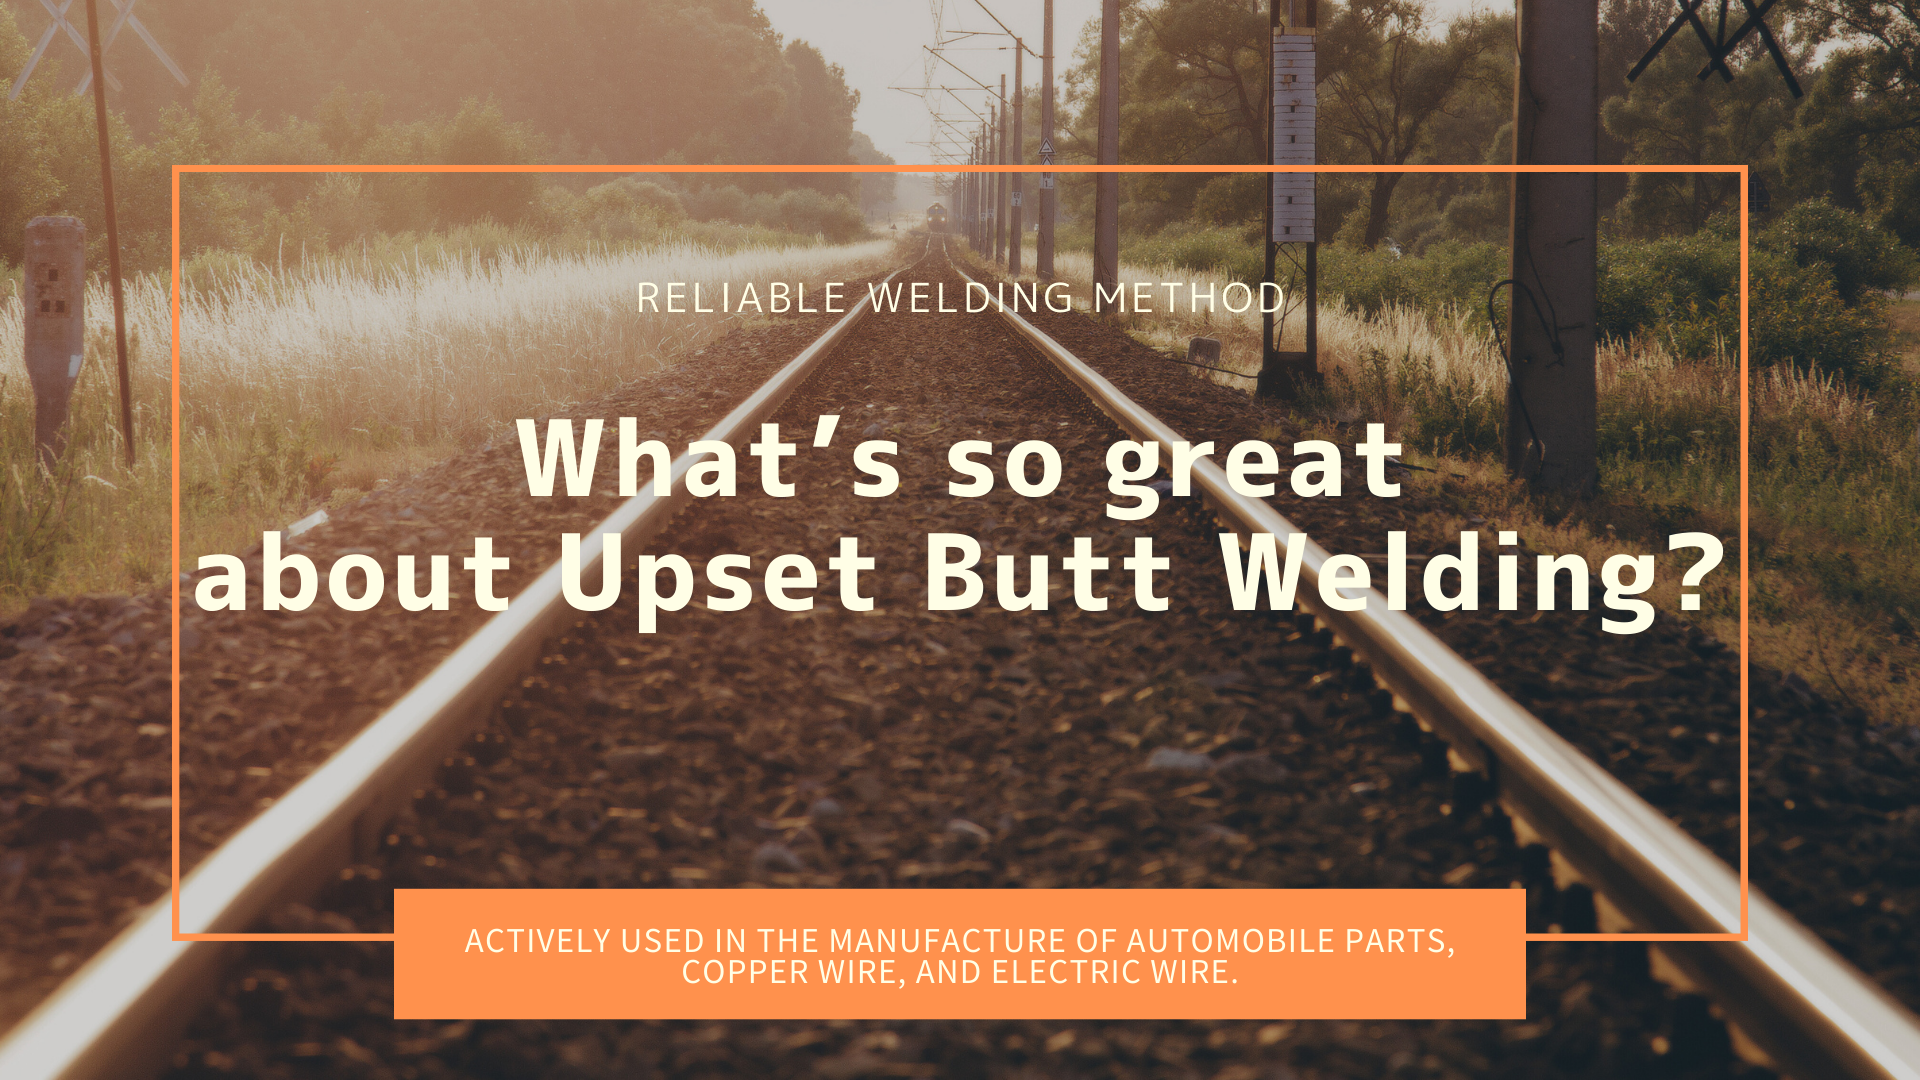 Upset Butt Welding